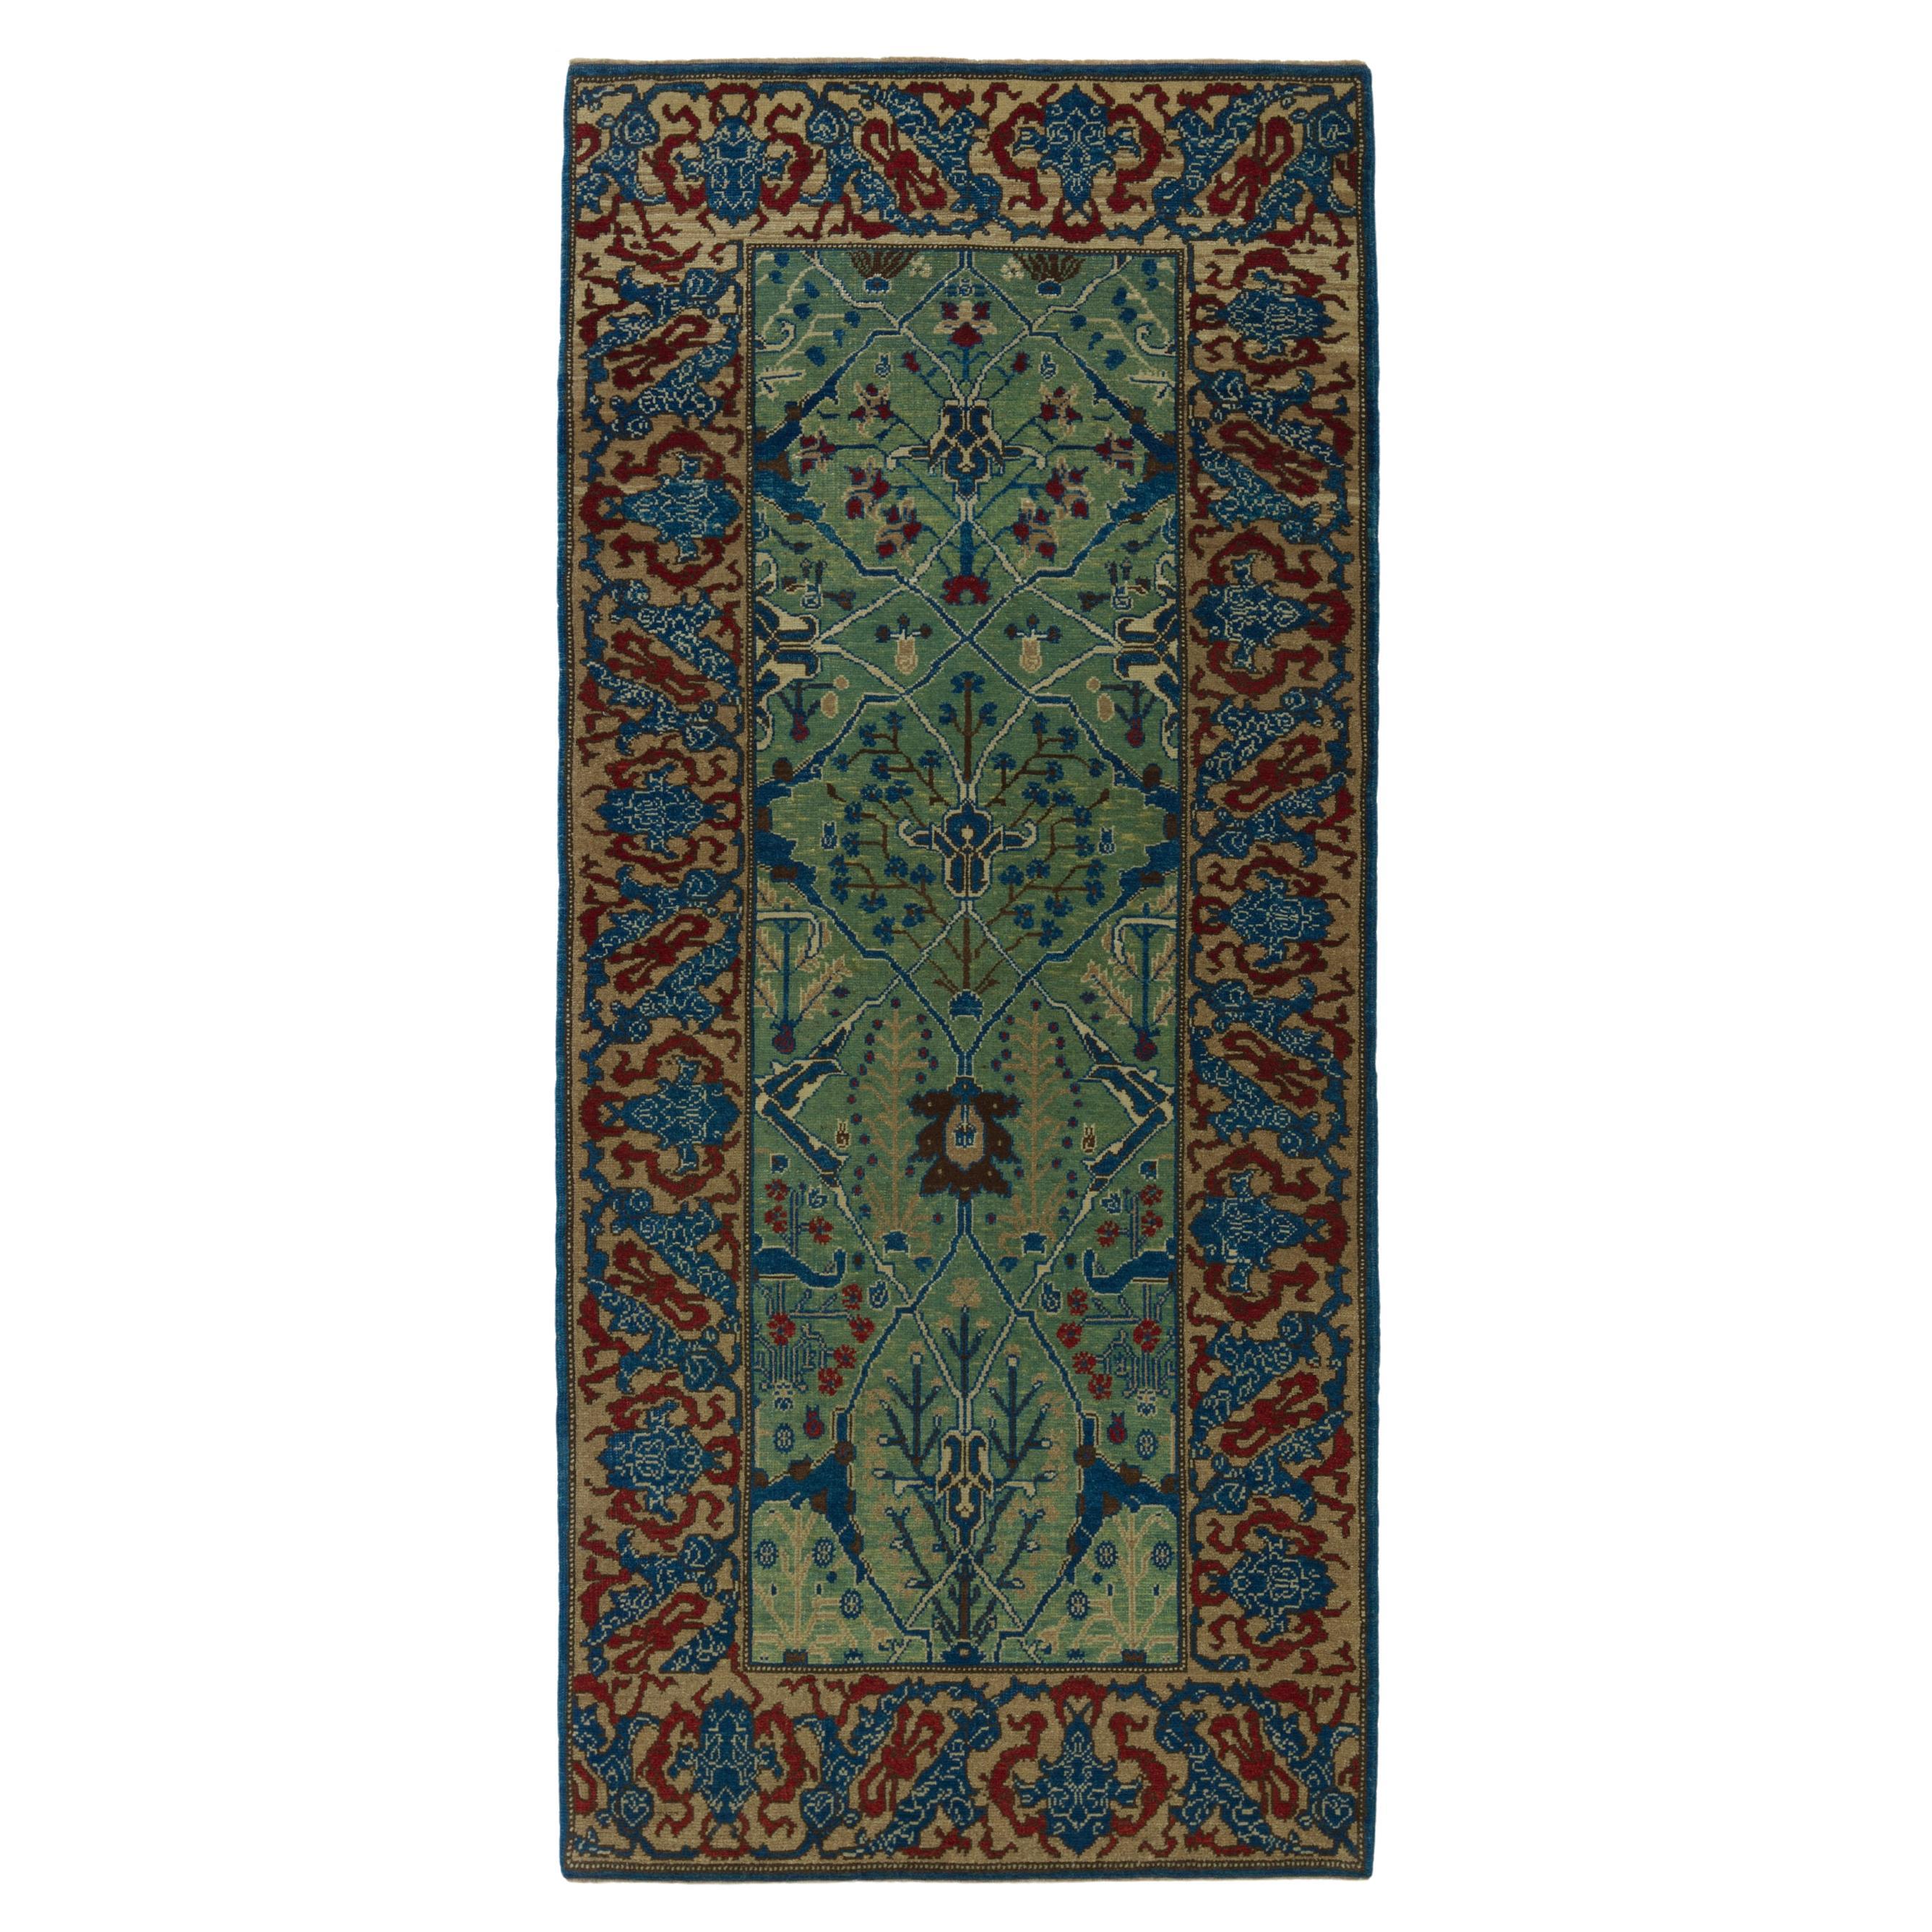 Ararat-Teppich Gerous Arabesque, antiker Teppich im persischen Revival-Stil, natürlich gefärbt